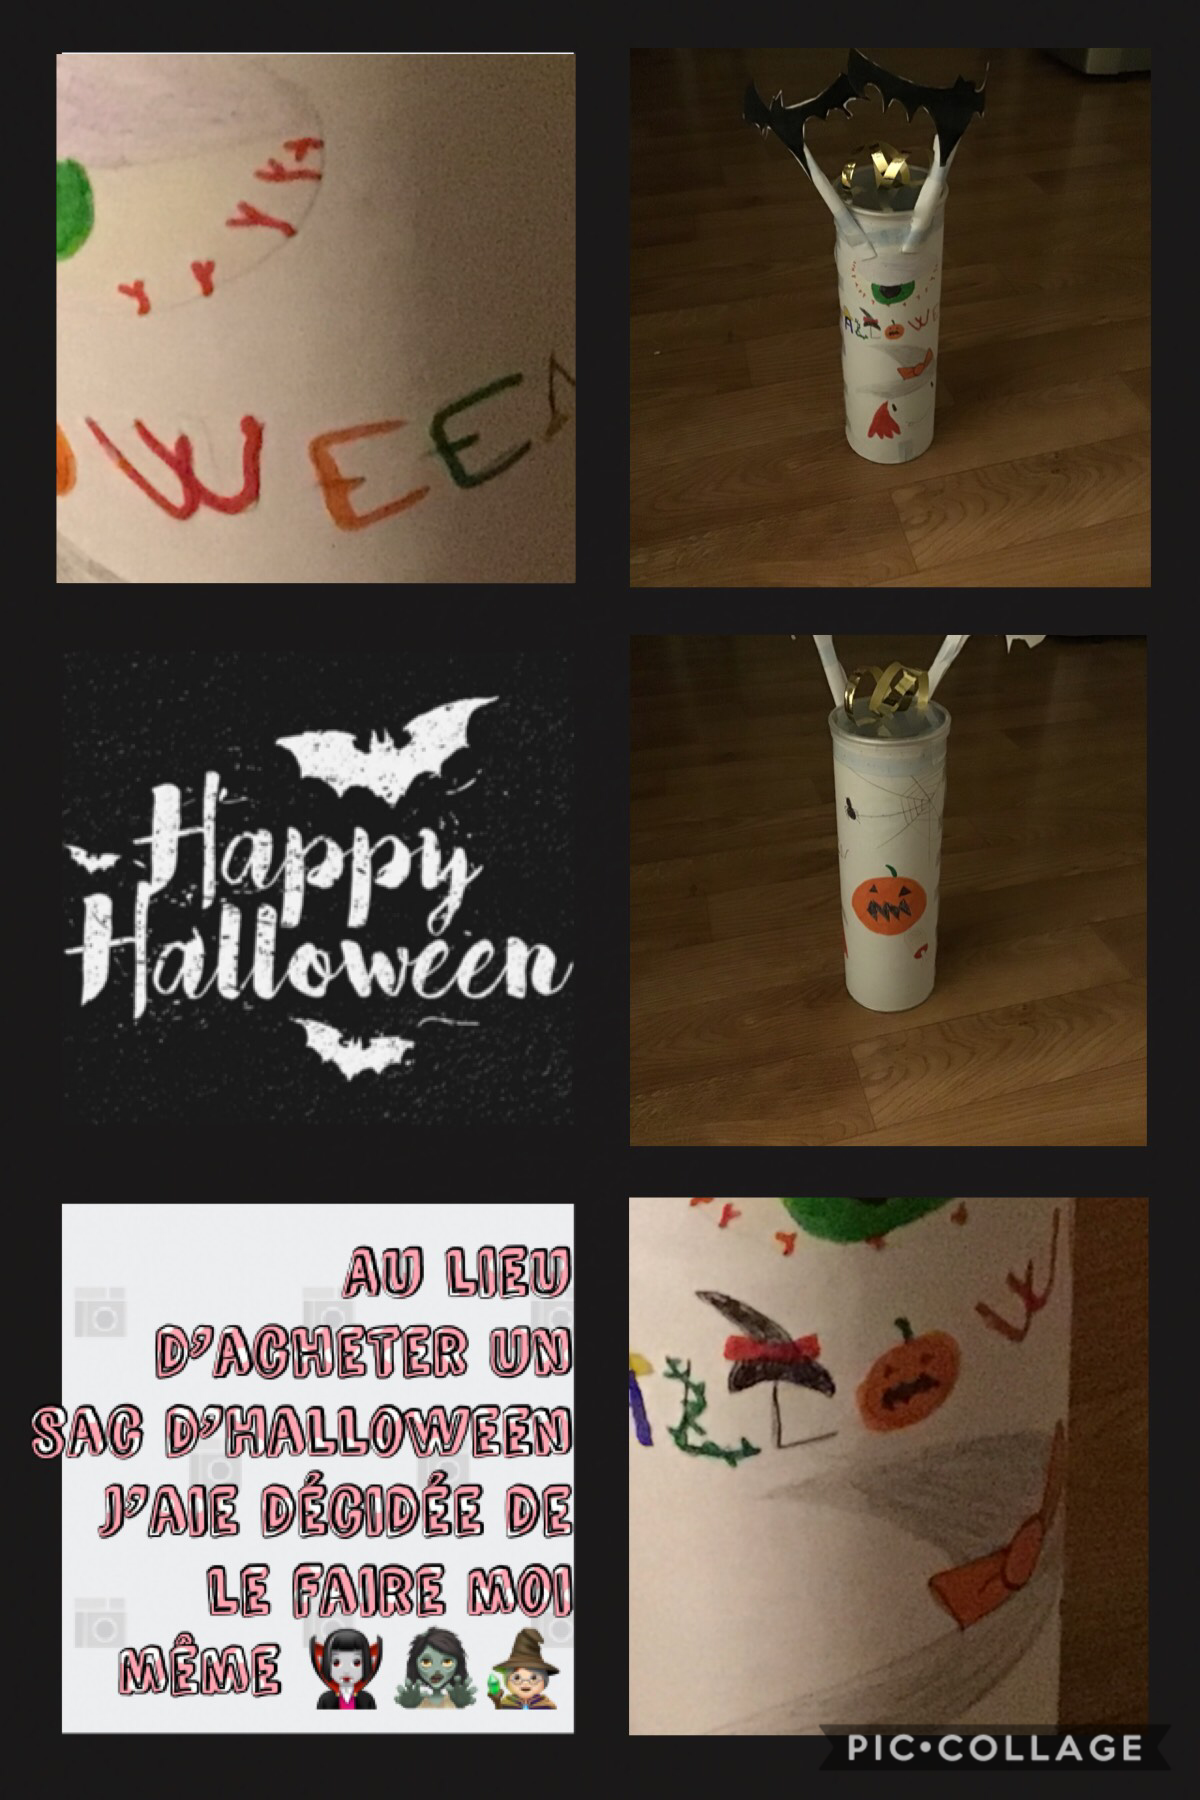 Dans mon futur pic collage j’aie décidée de vous montrez comment reproduire cette boîte d’Halloween 


Et dites moi ce que vous en pensez